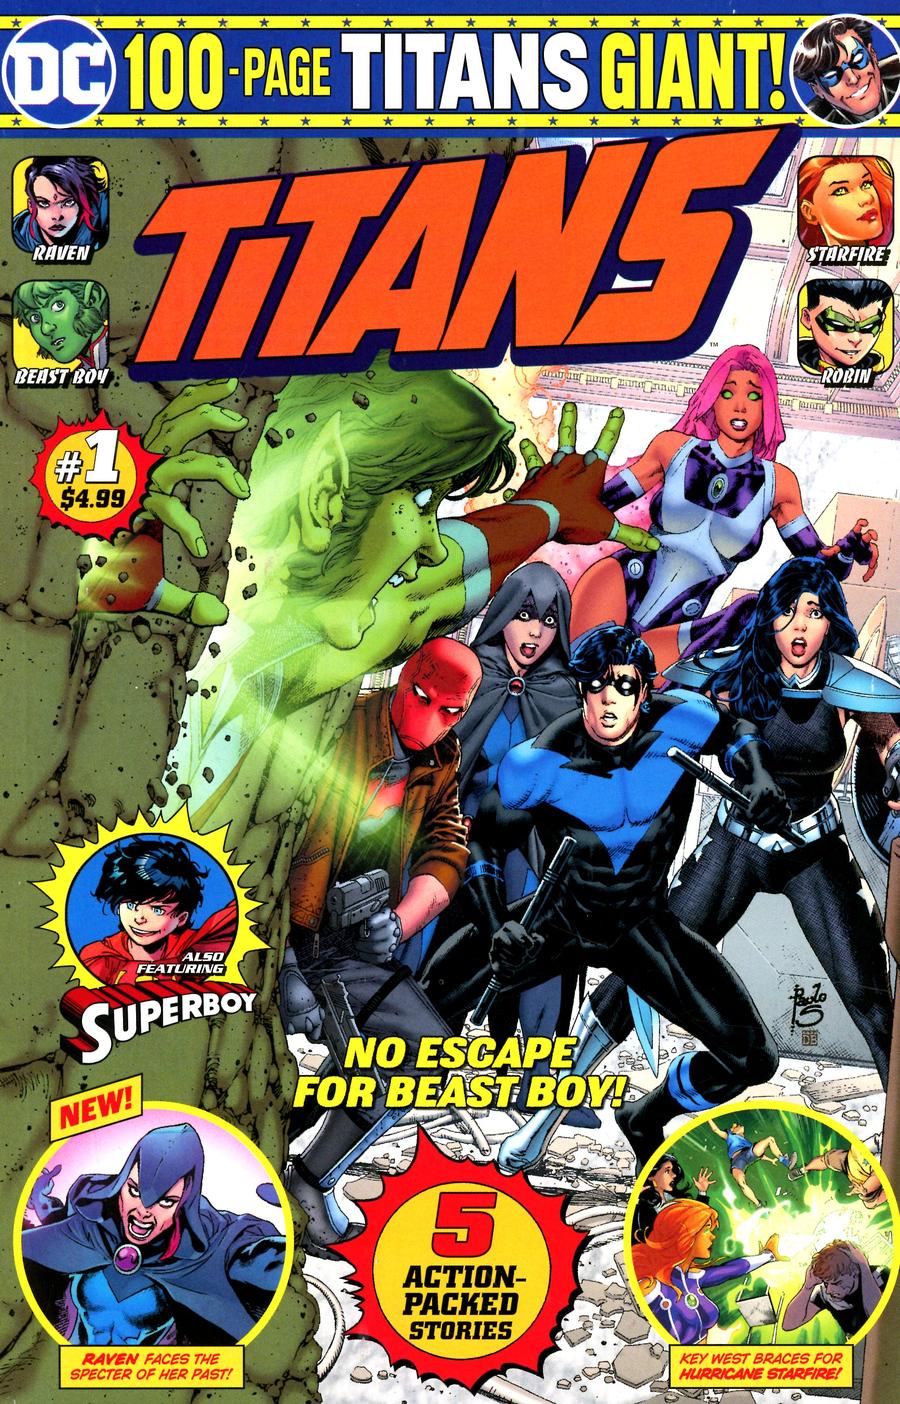 Titans Giant #1